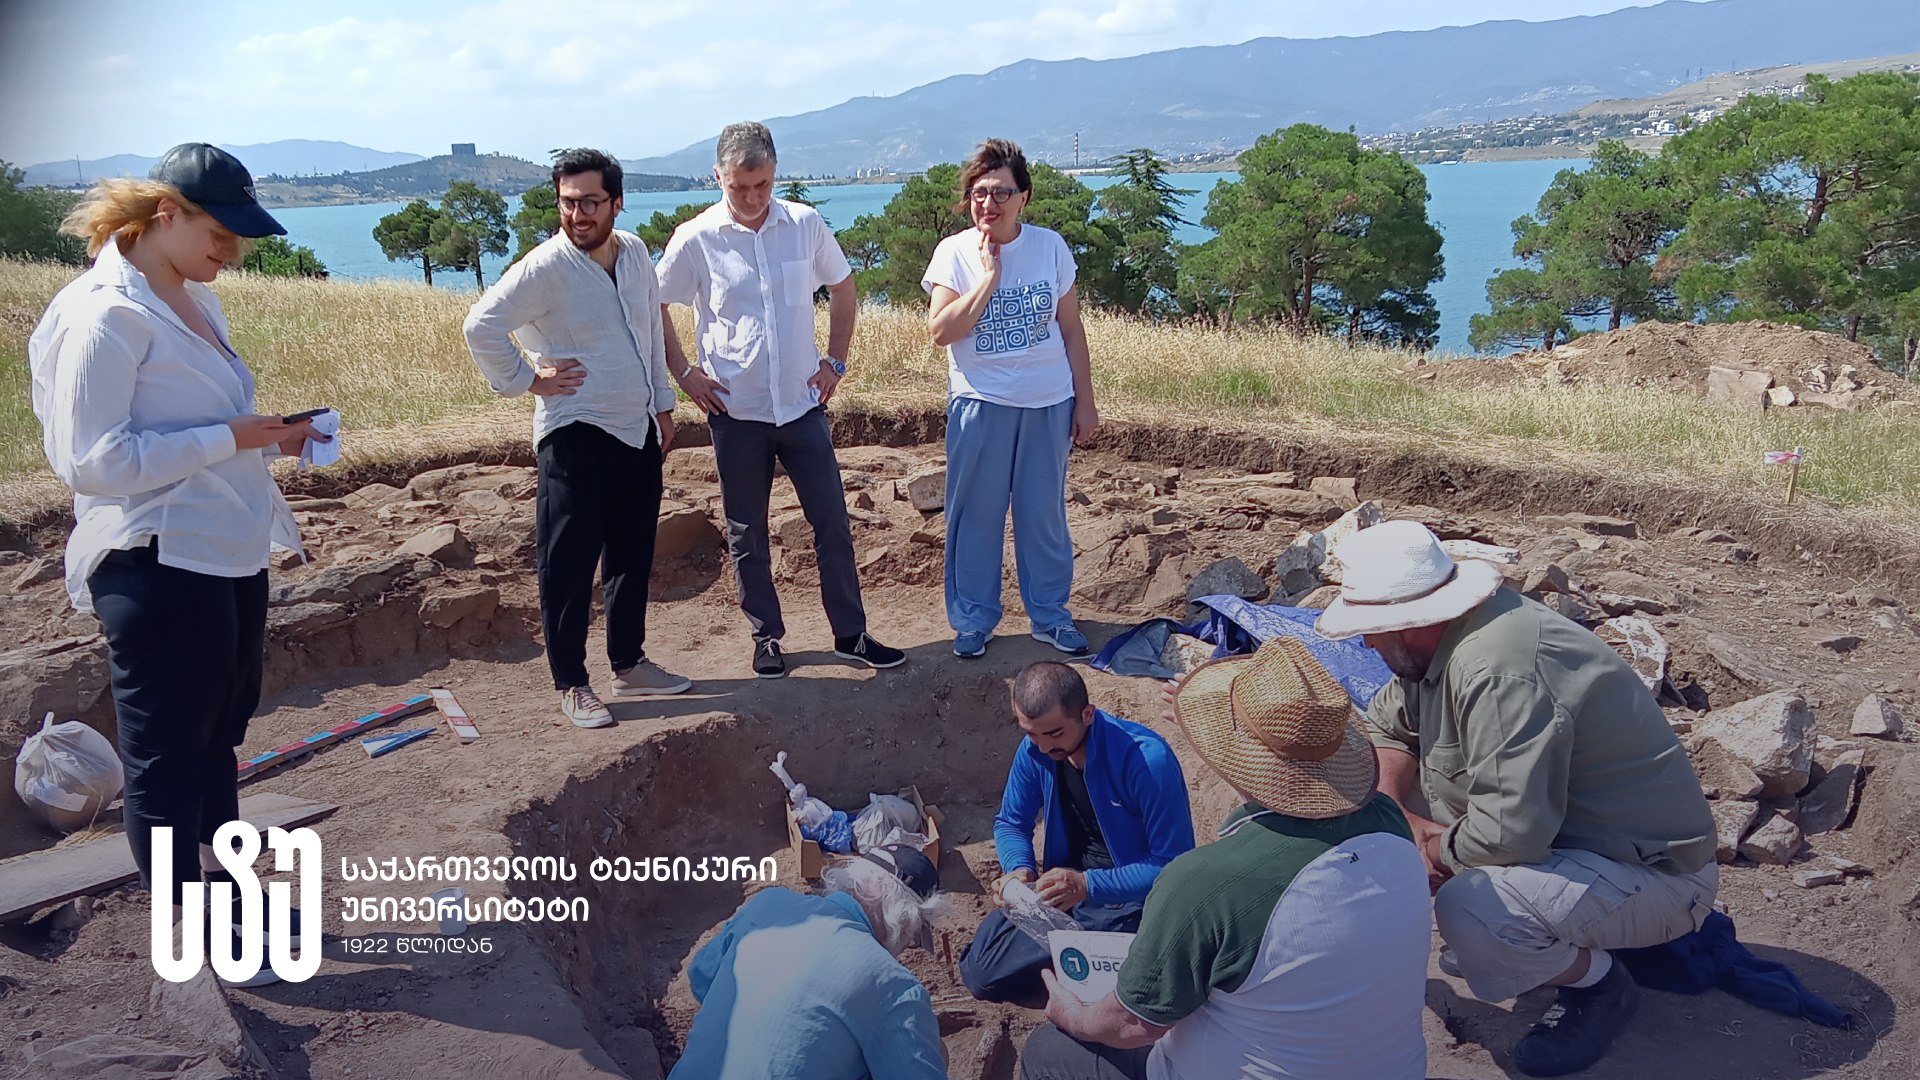 სტუ-ის სტუდენტ-არქეოლოგთა ჯგუფი მნიშვნელოვანი აღმოჩენის თანამონაწილე გახდა